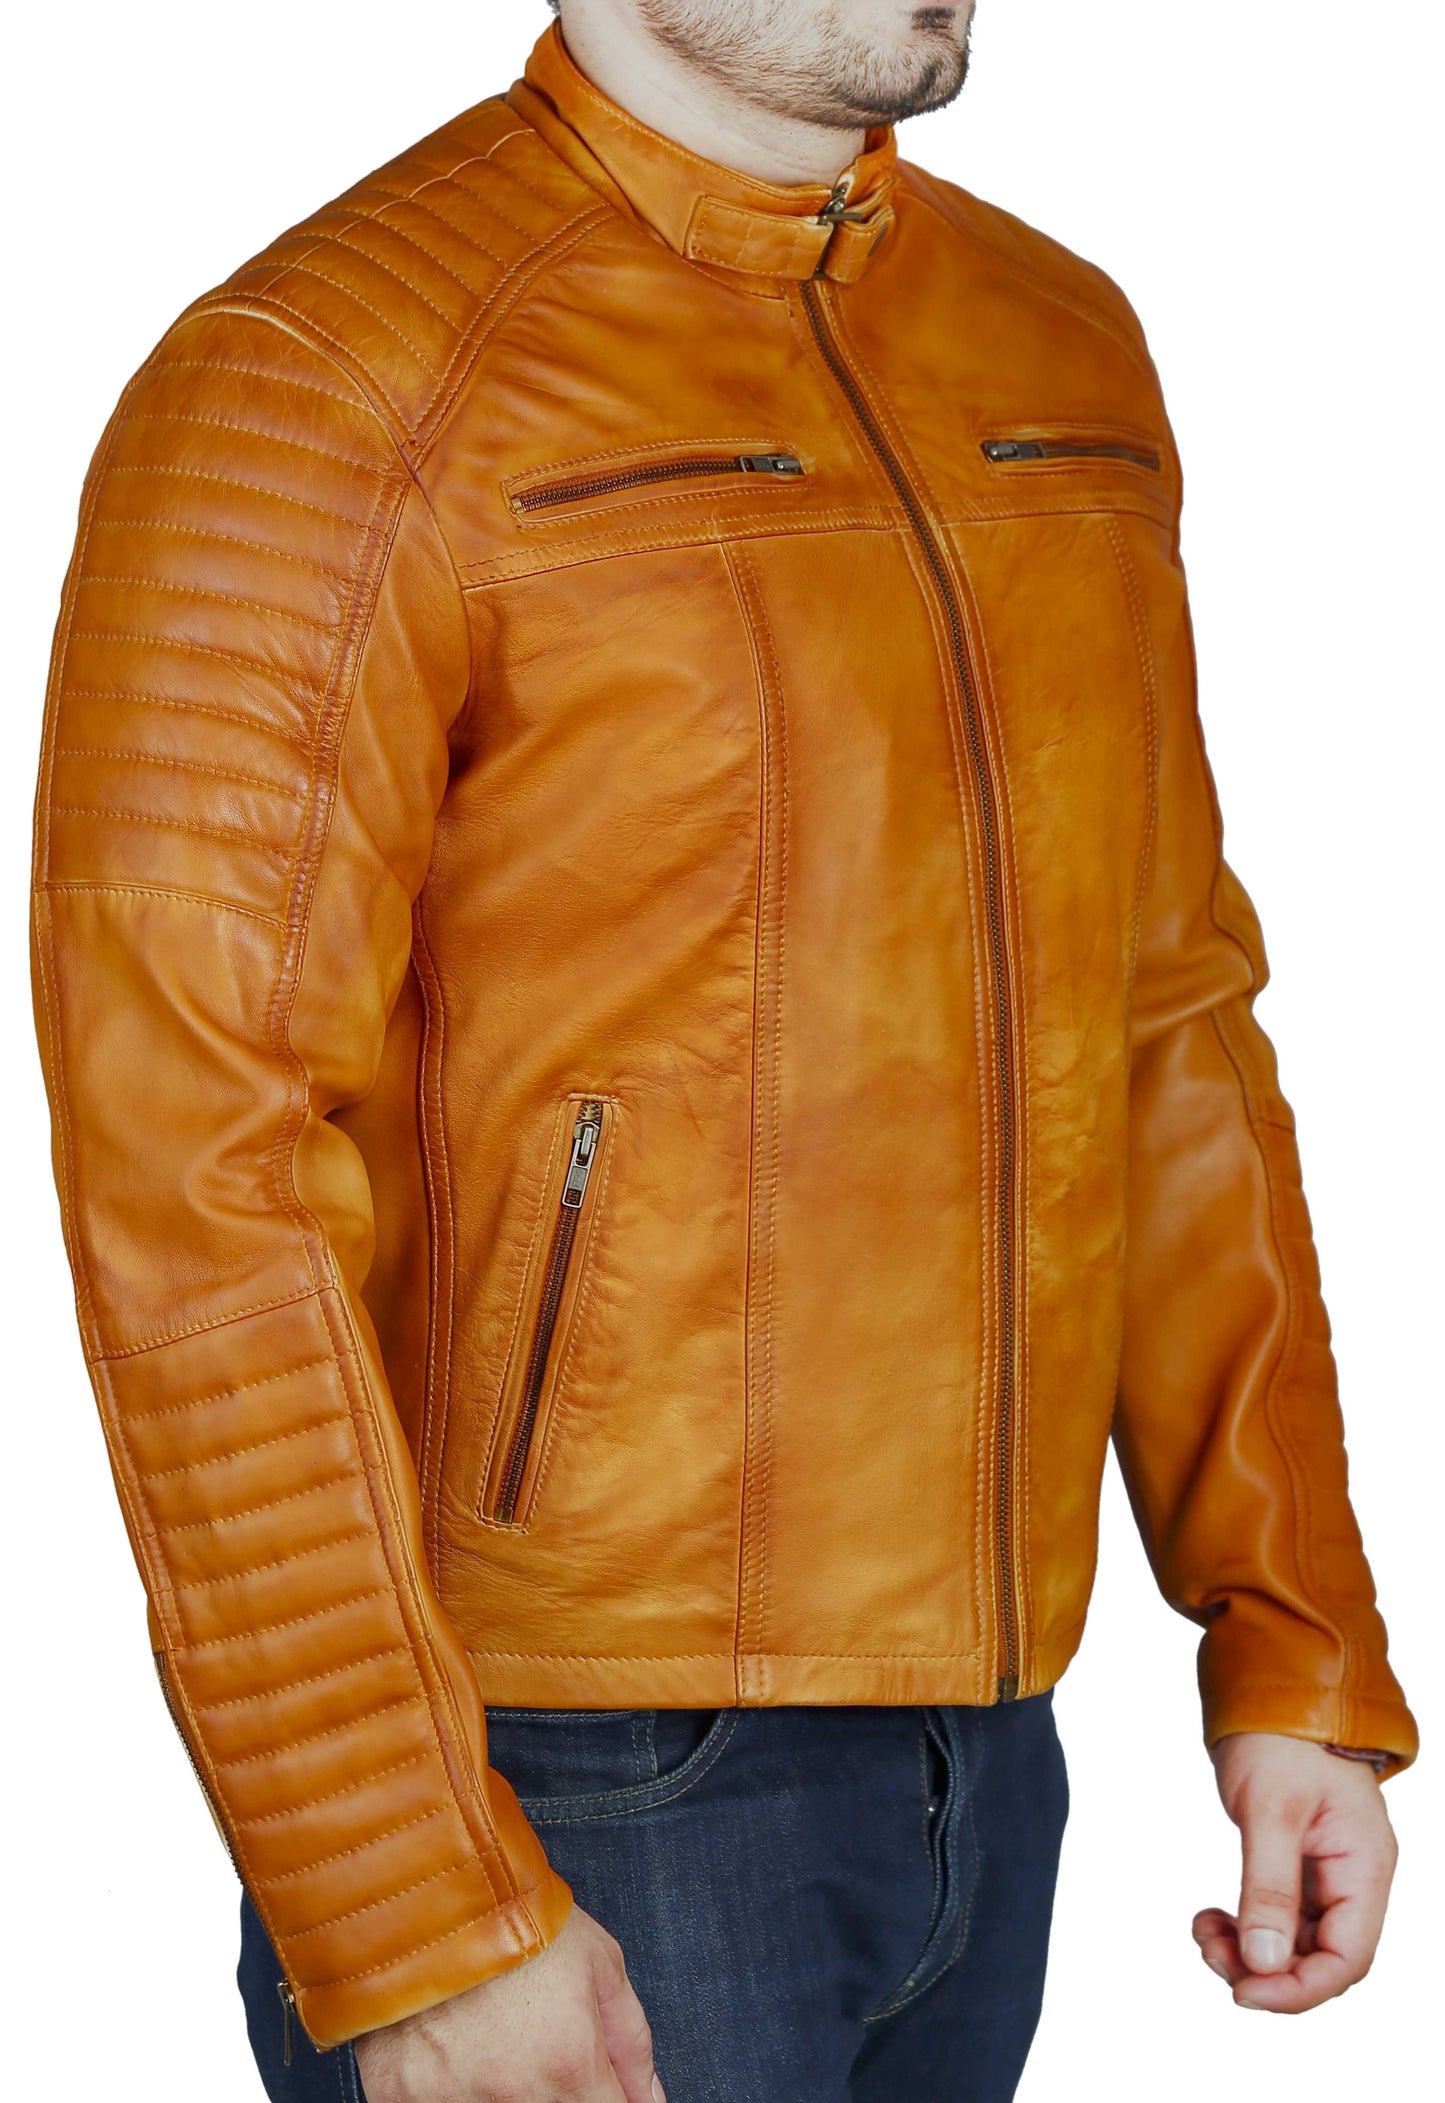 Men's Elite Herran Biker Motorcycle Distressed Golden Brown Leather Jacket